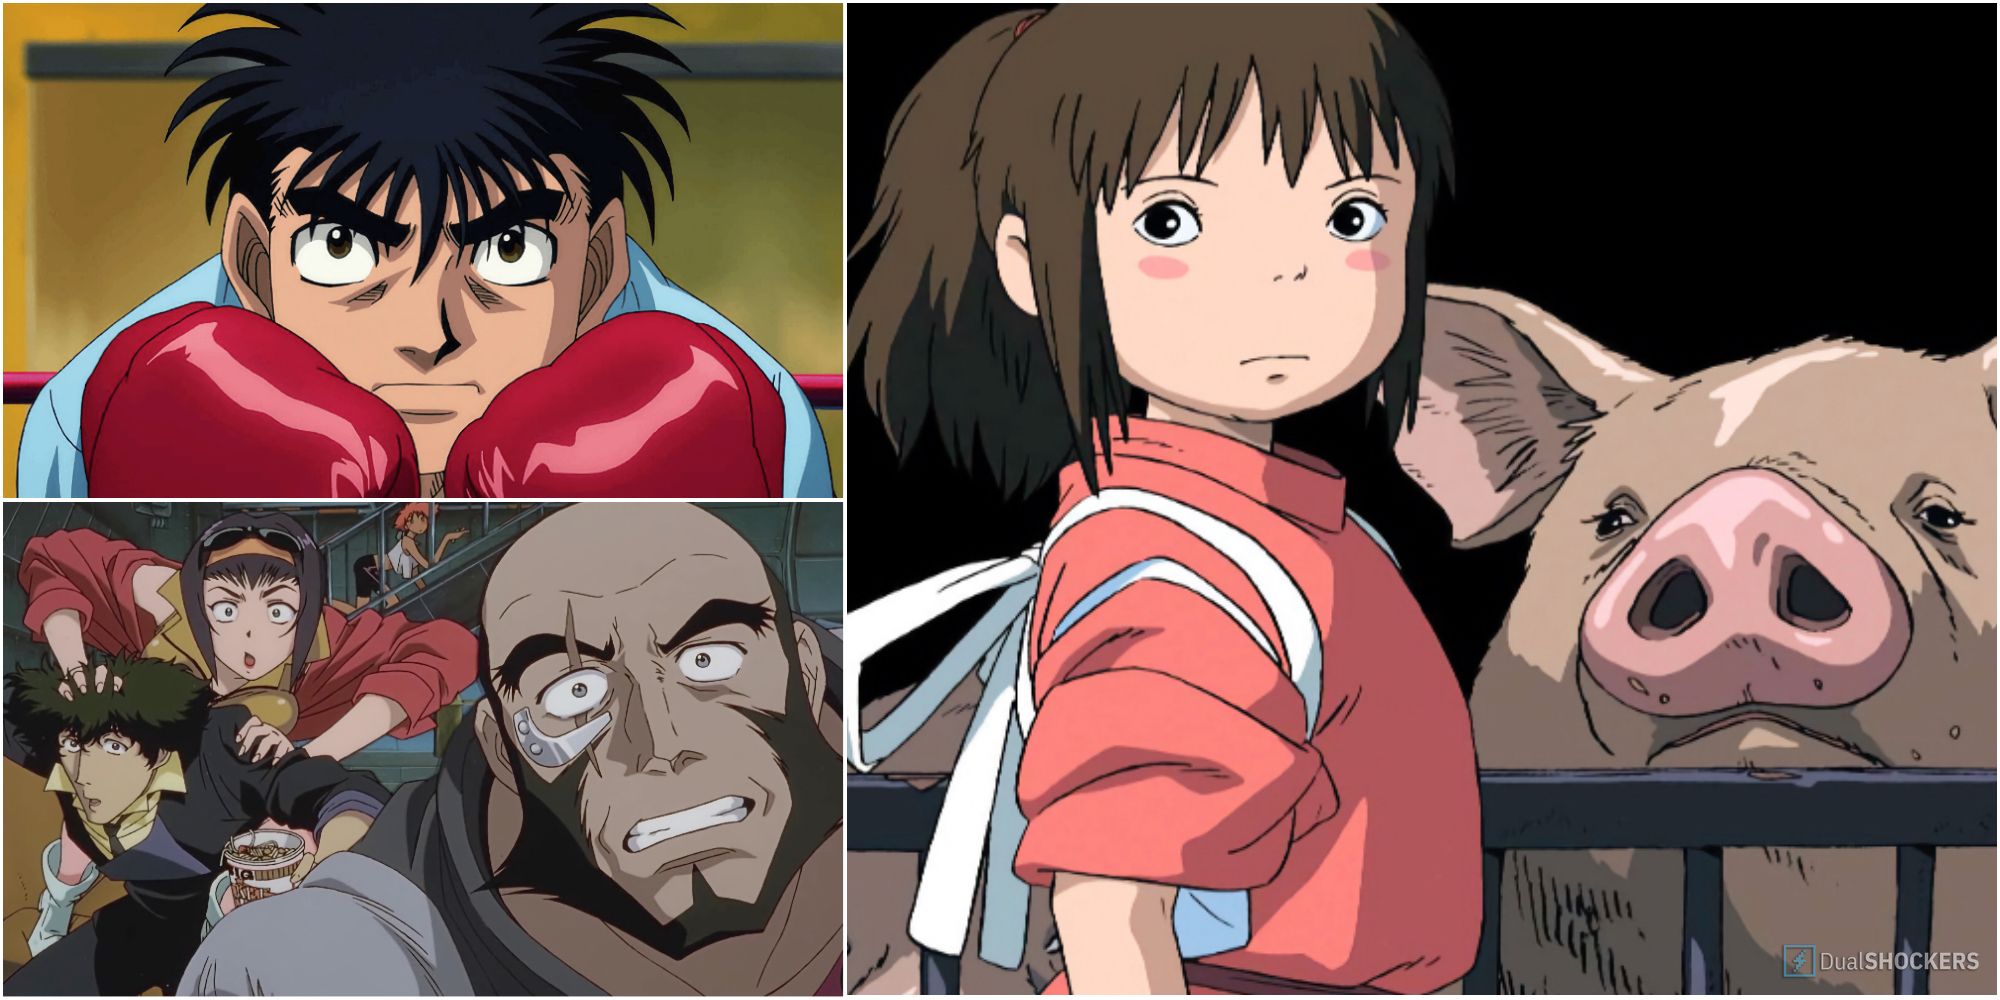 Inuyasha / Yashahima. Aged Anime 2000 - 2004, 2009 -2010, and 2020+